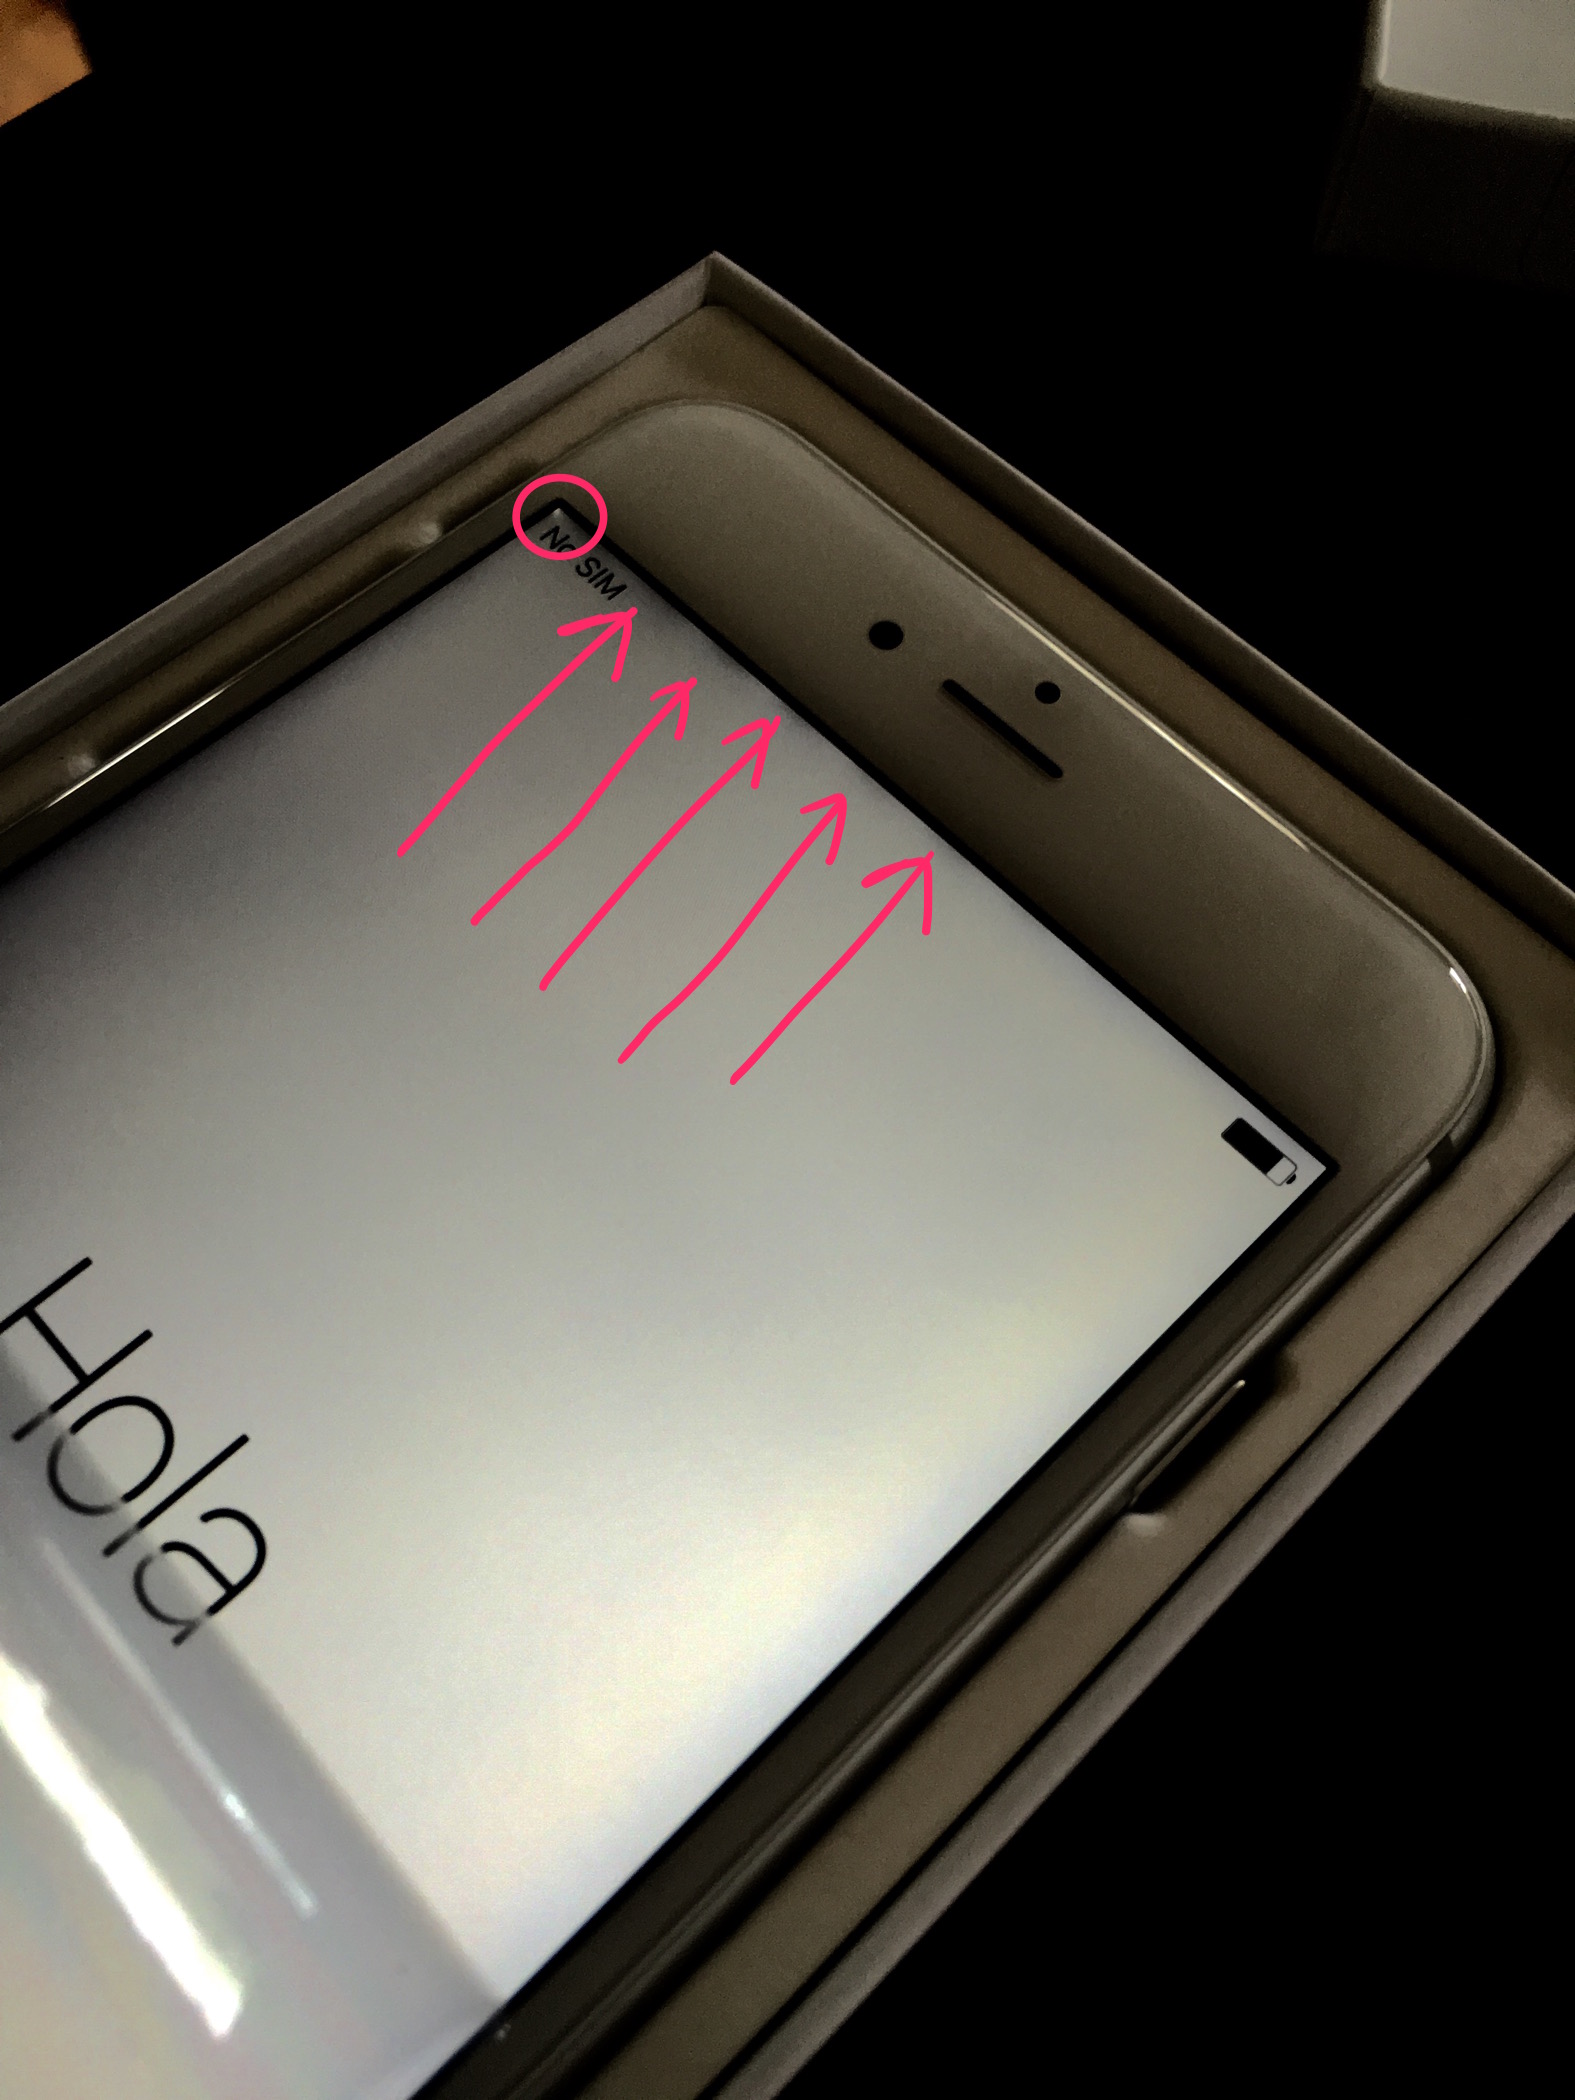 Probleme mit dem Backlight-Bleeding-Bildschirm des iPhone 6S Plus 1